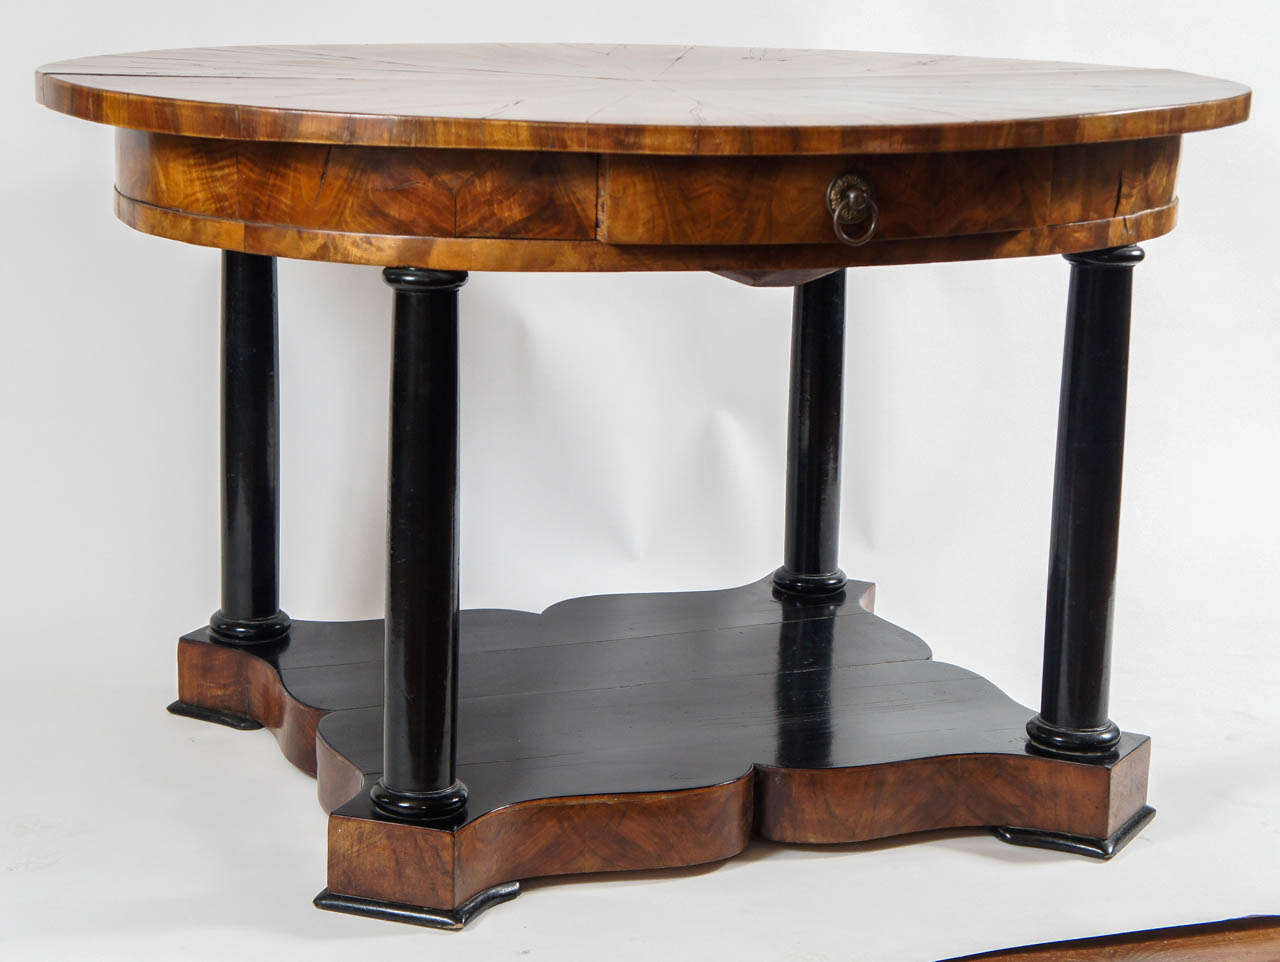 Außergewöhnlicher, ovaler Biedermeier-Tisch aus Nussbaum um 1830 mit einer exquisiten Furnierplatte mit Strahlenmuster und einer einzigen durchgehenden mittleren Schublade über ebonisierten dorischen Kolonettenstützen auf einem Sockel mit Höckern.